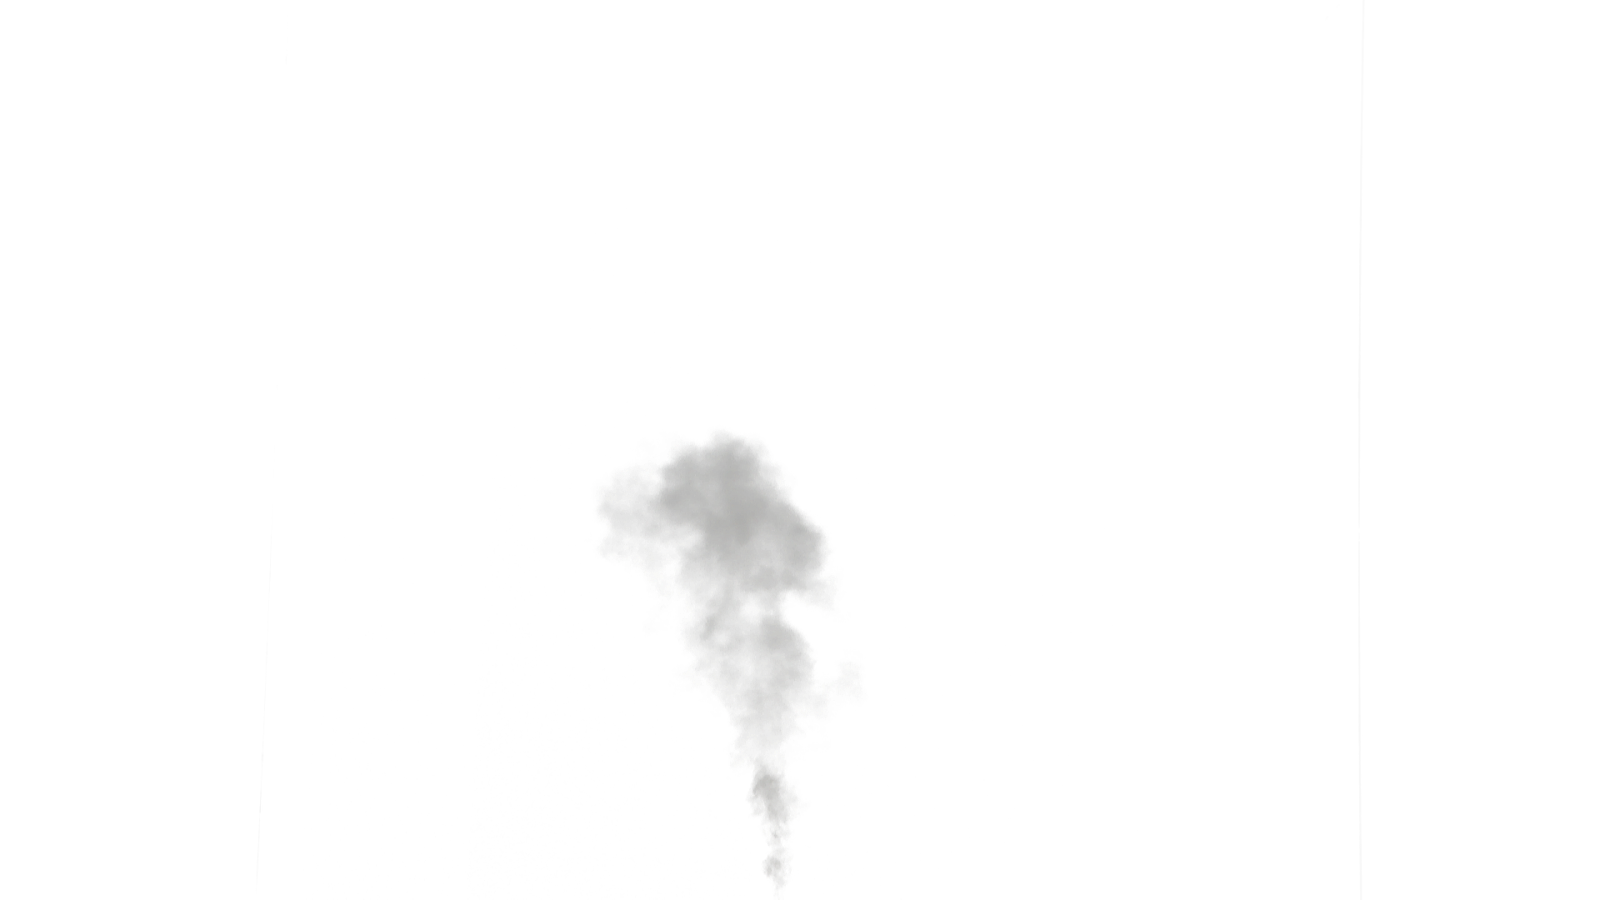 Similar Smoke Effect PNG Imag